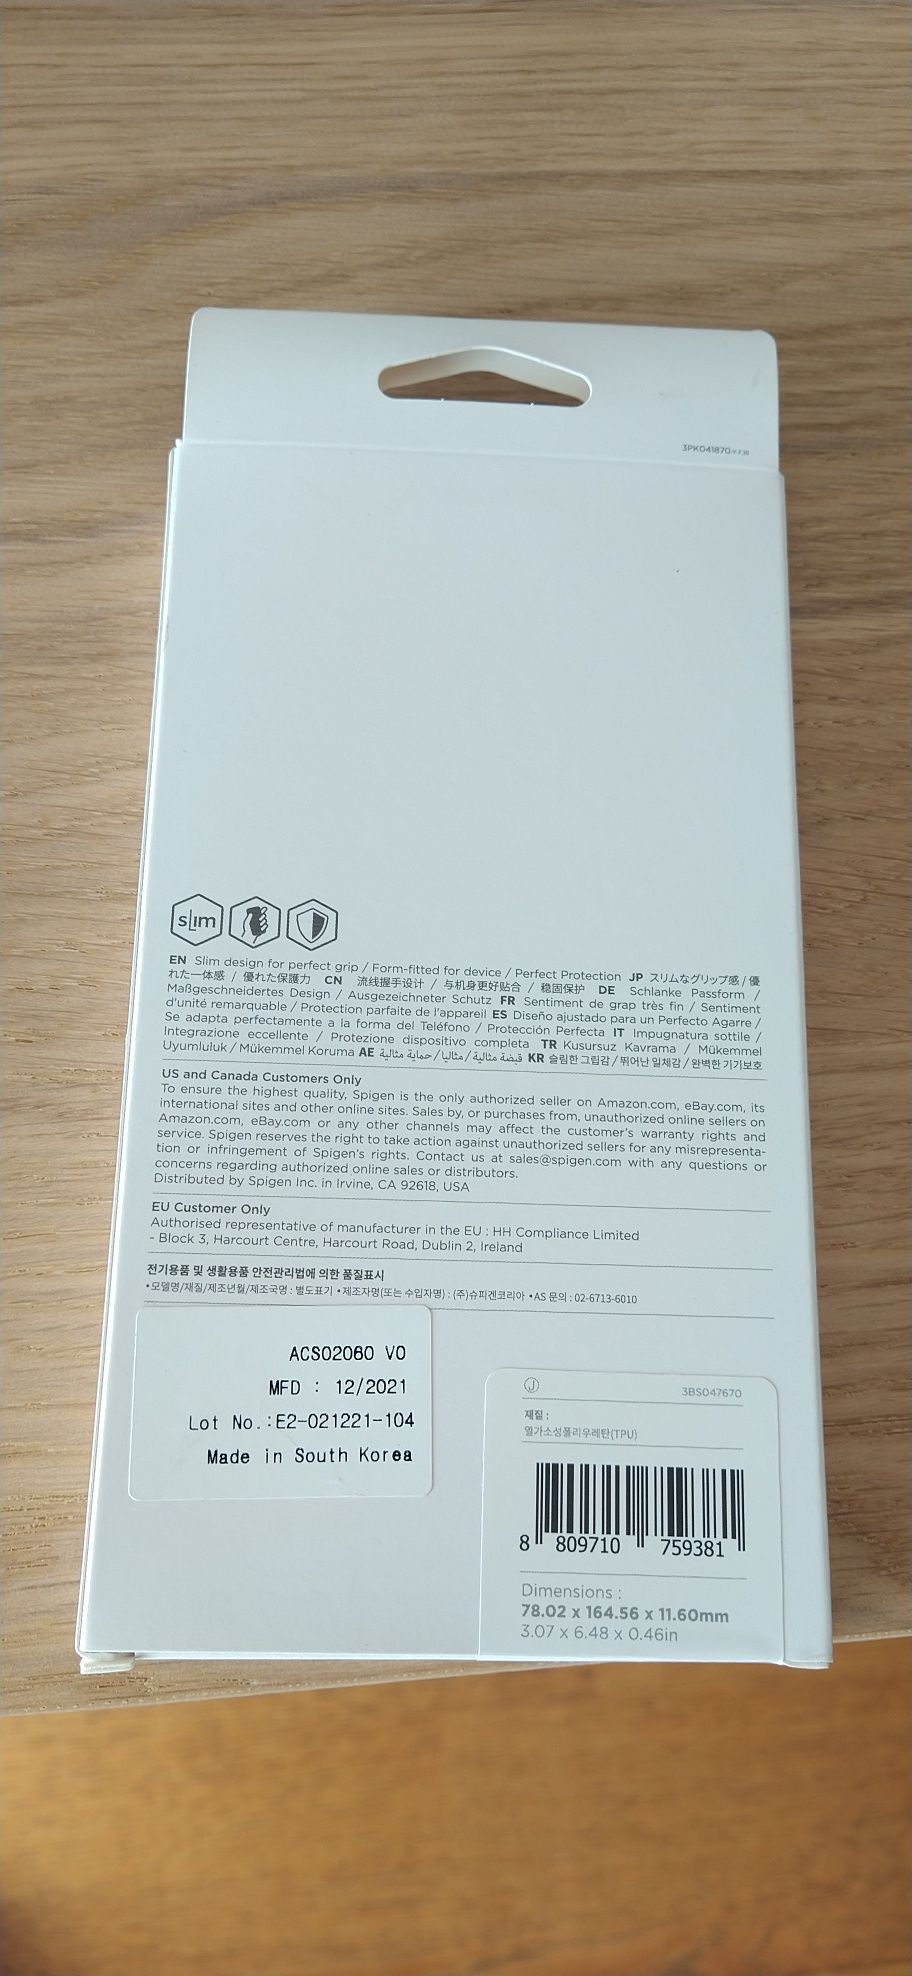 Capa Spigen OnePlus 8T